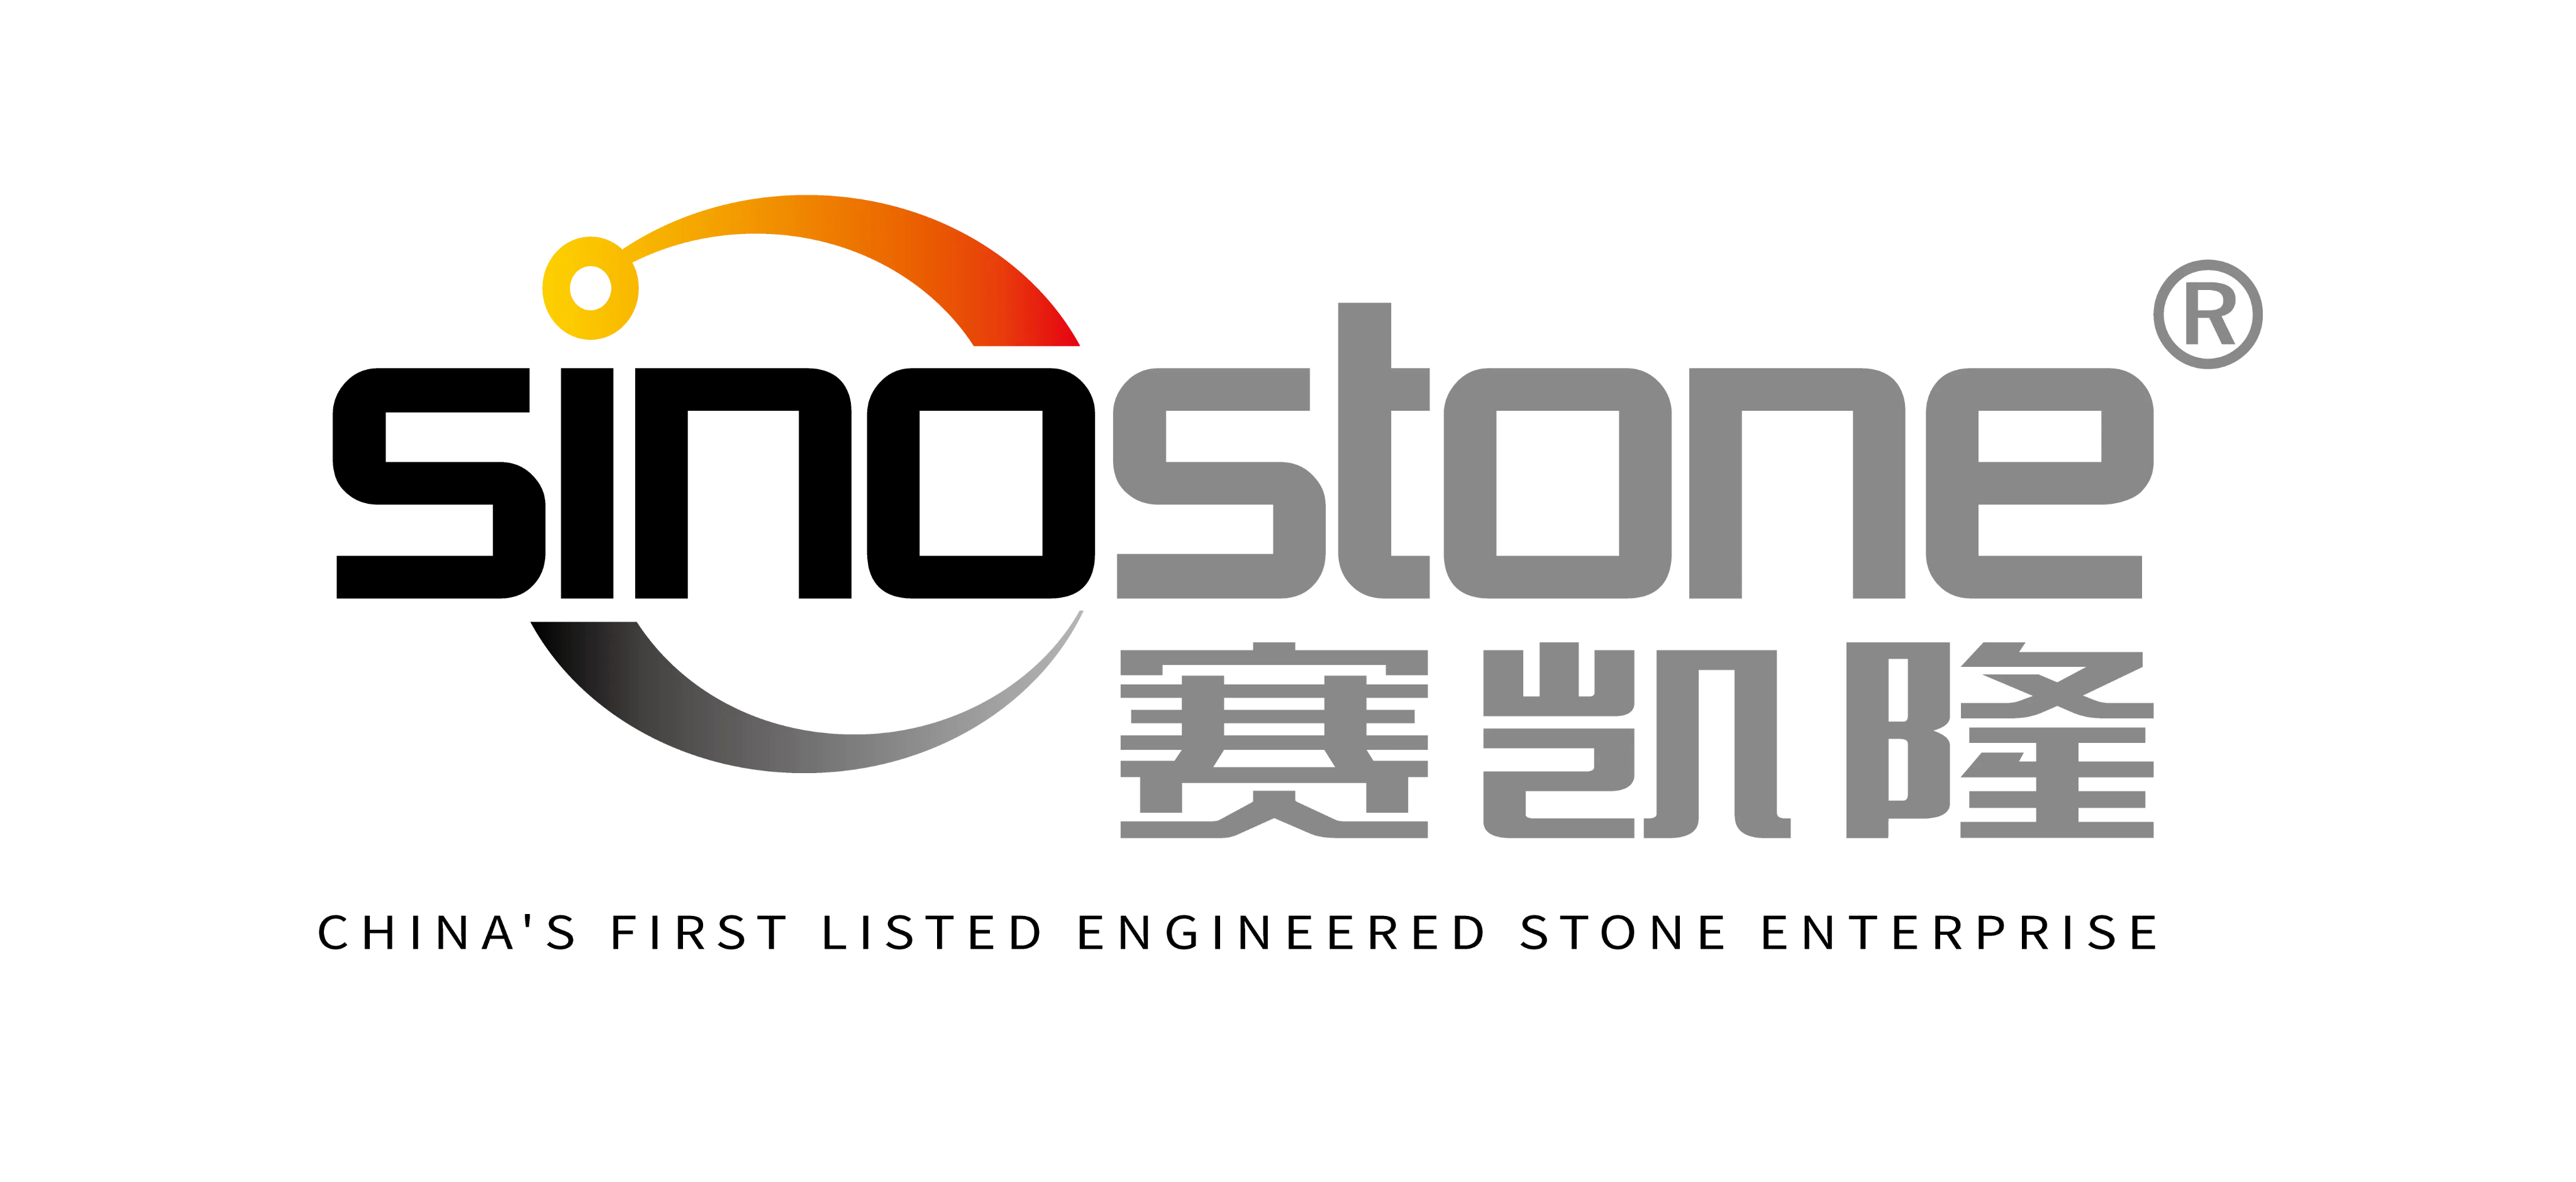 Sinostone (Guangdong) Co., Ltd.